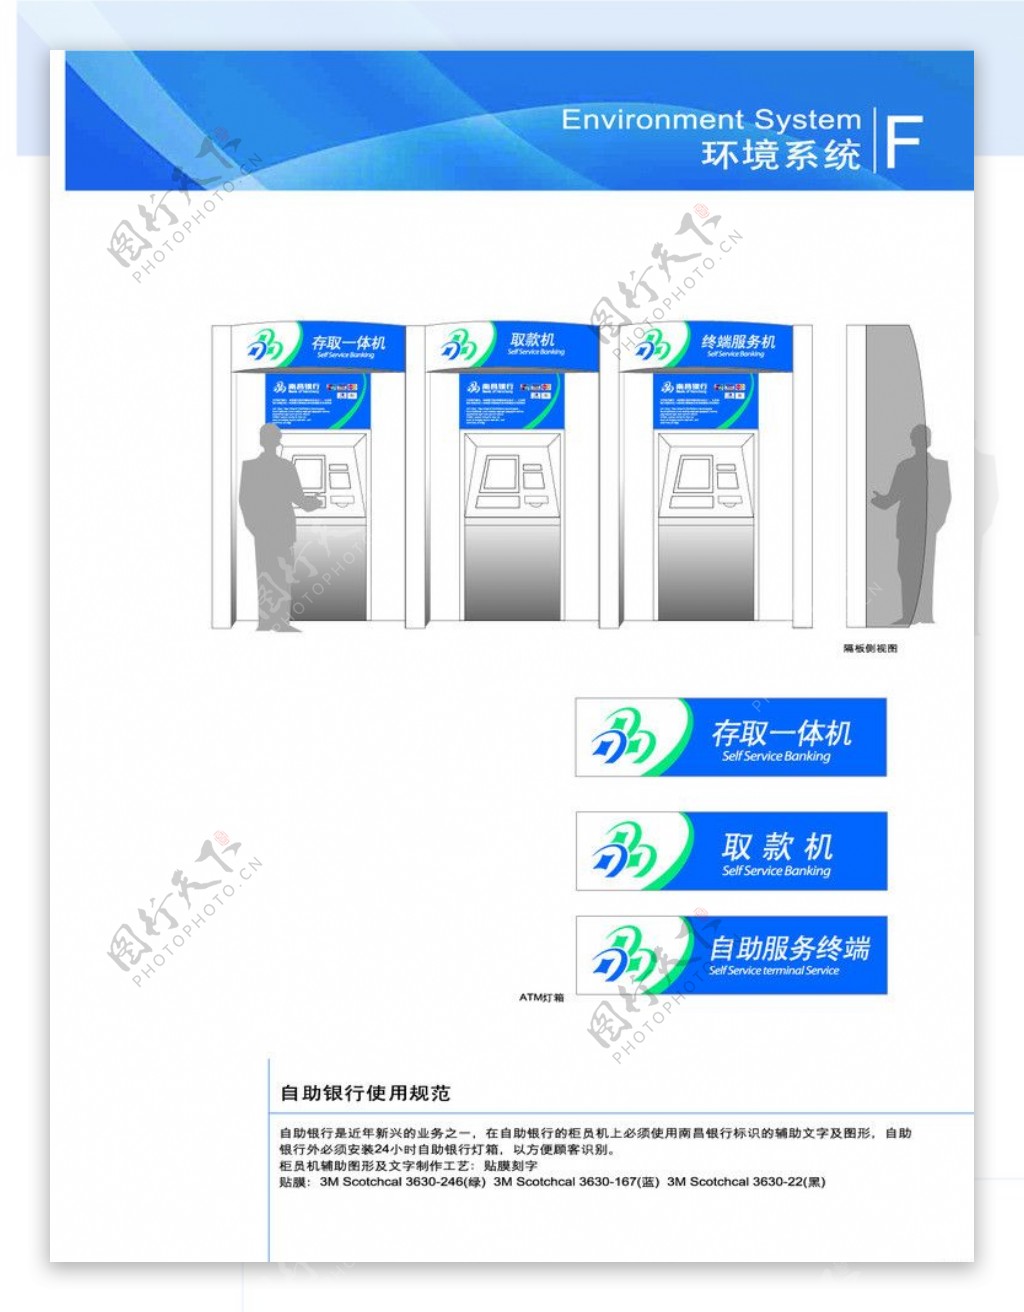 ATM柜机使用规范银行自助银行存取一体机取款机外挂灯箱使用规范环境系统图片